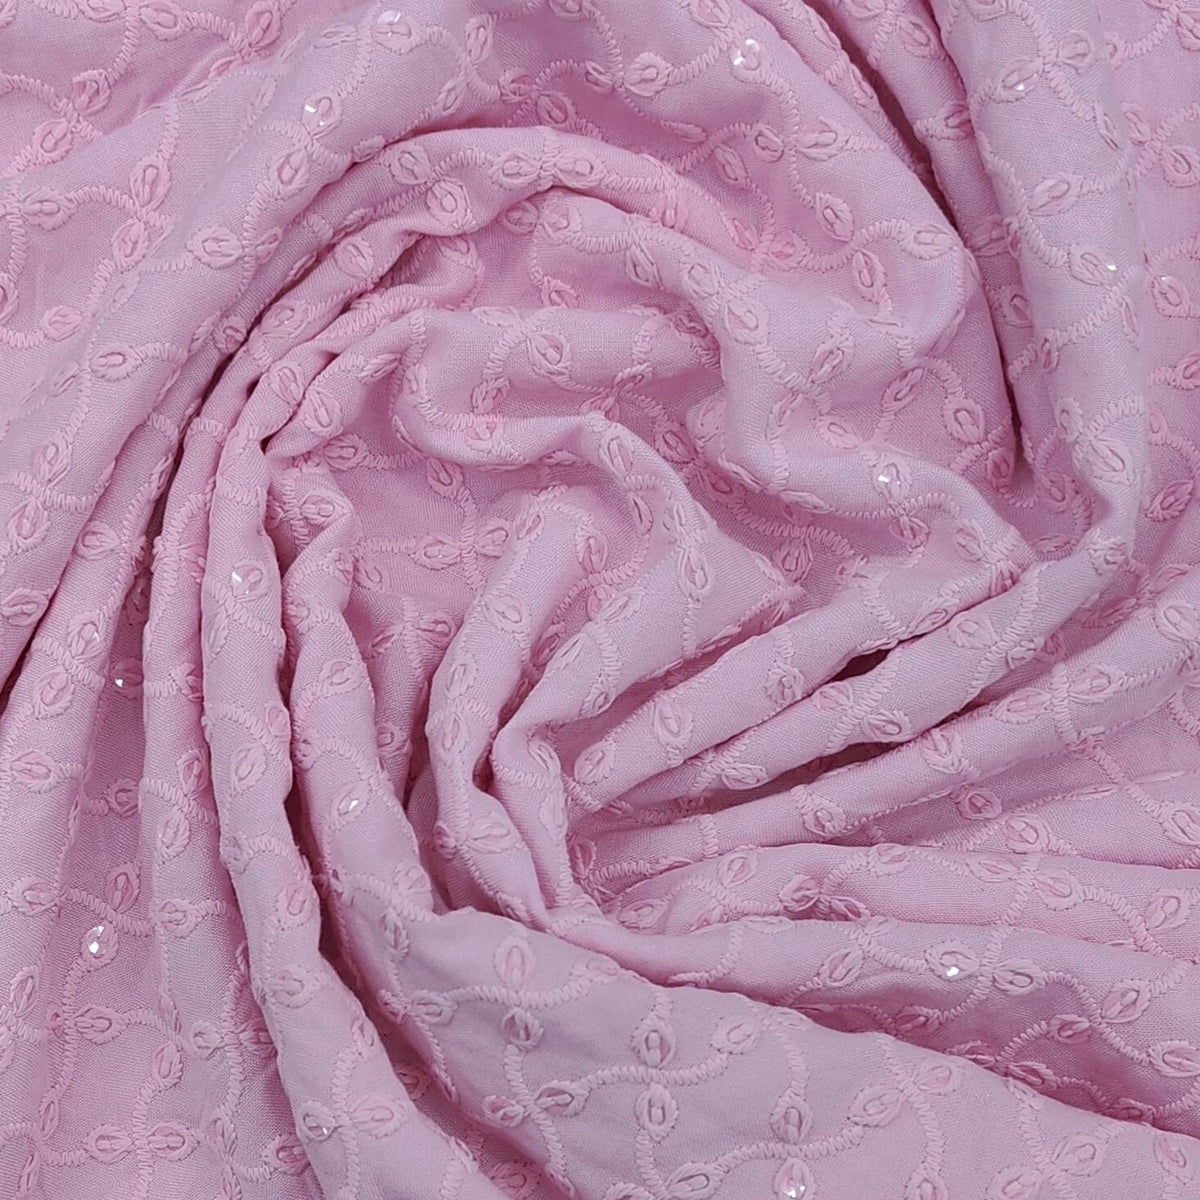 Mantire Men's Premium Chikankari Kurta Pyjama Fabric (Pink)